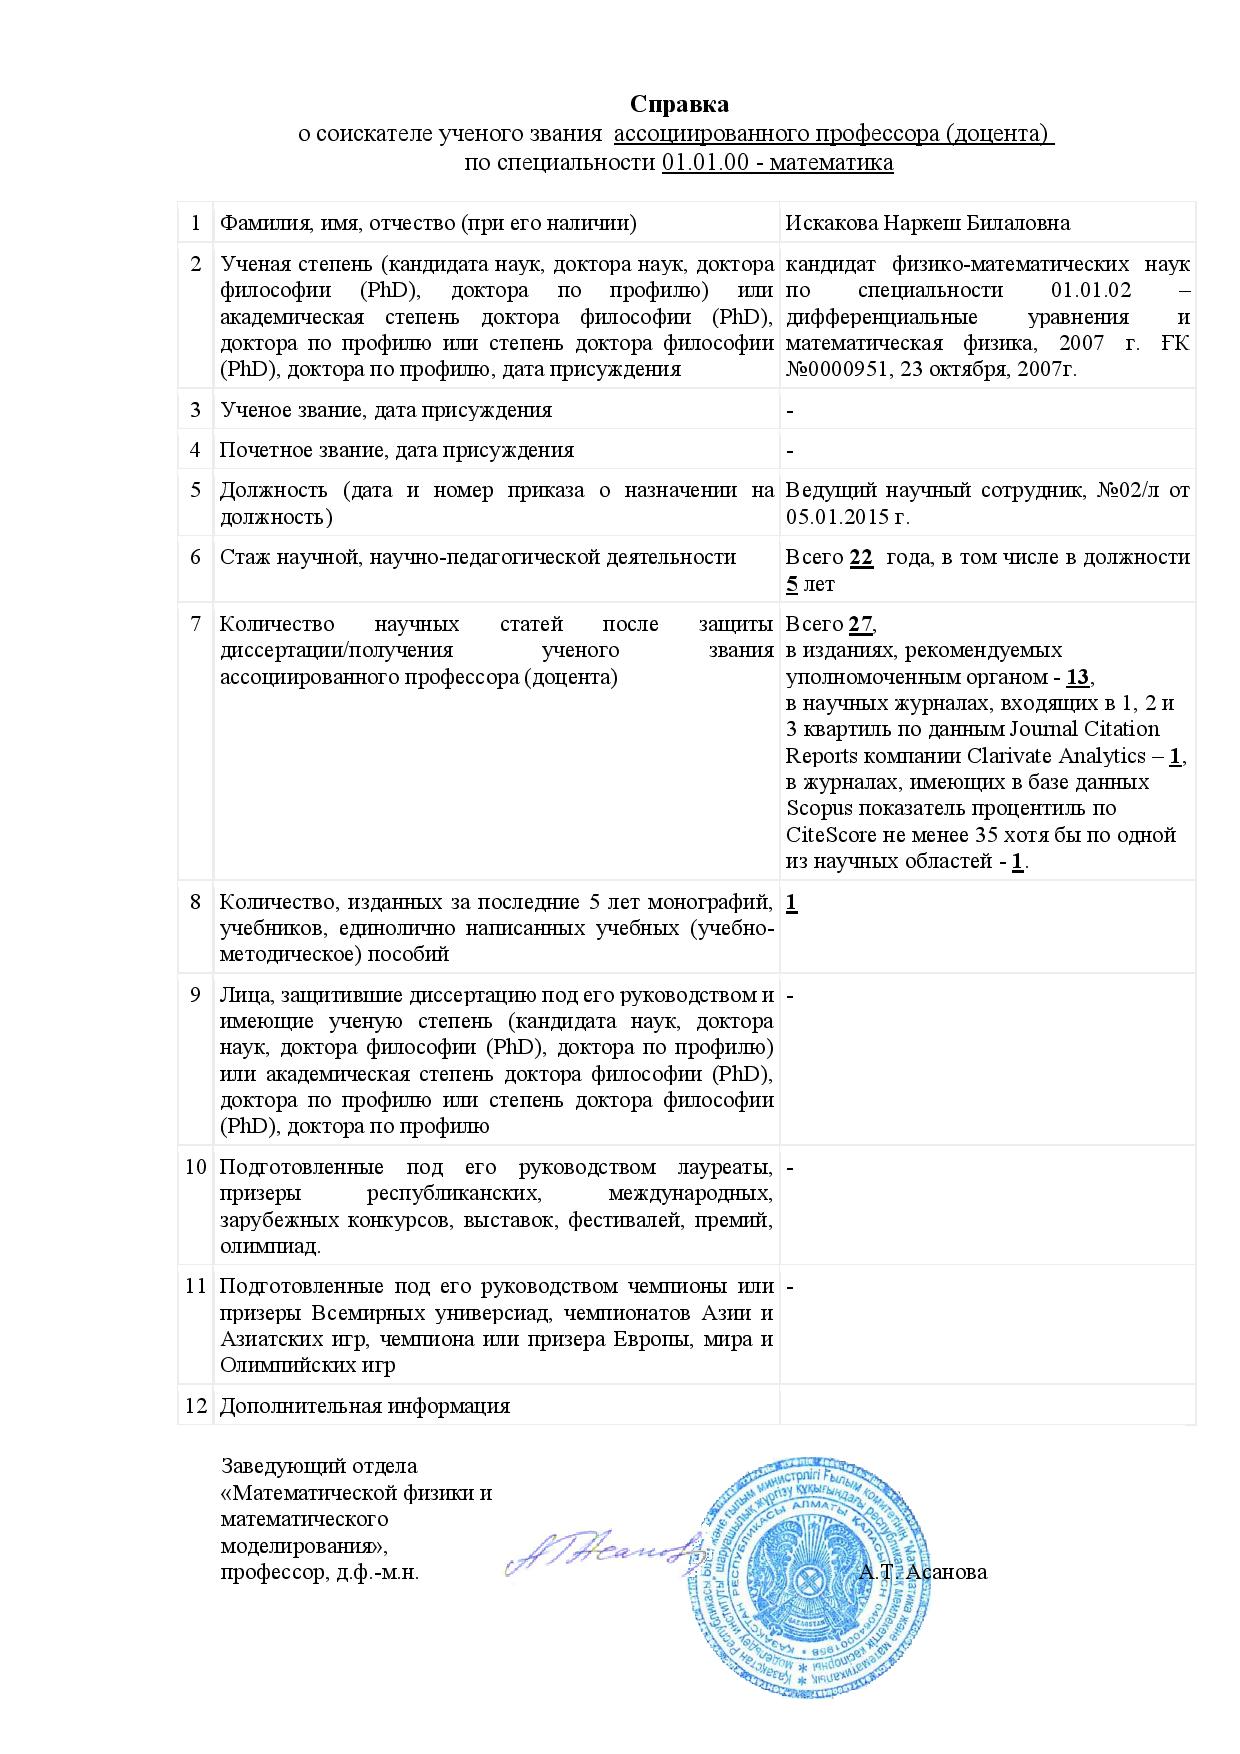 Справка о соискателе ученого звания ассоциированного профессора и список научных трудов Искаковой Наркеш Билаловны